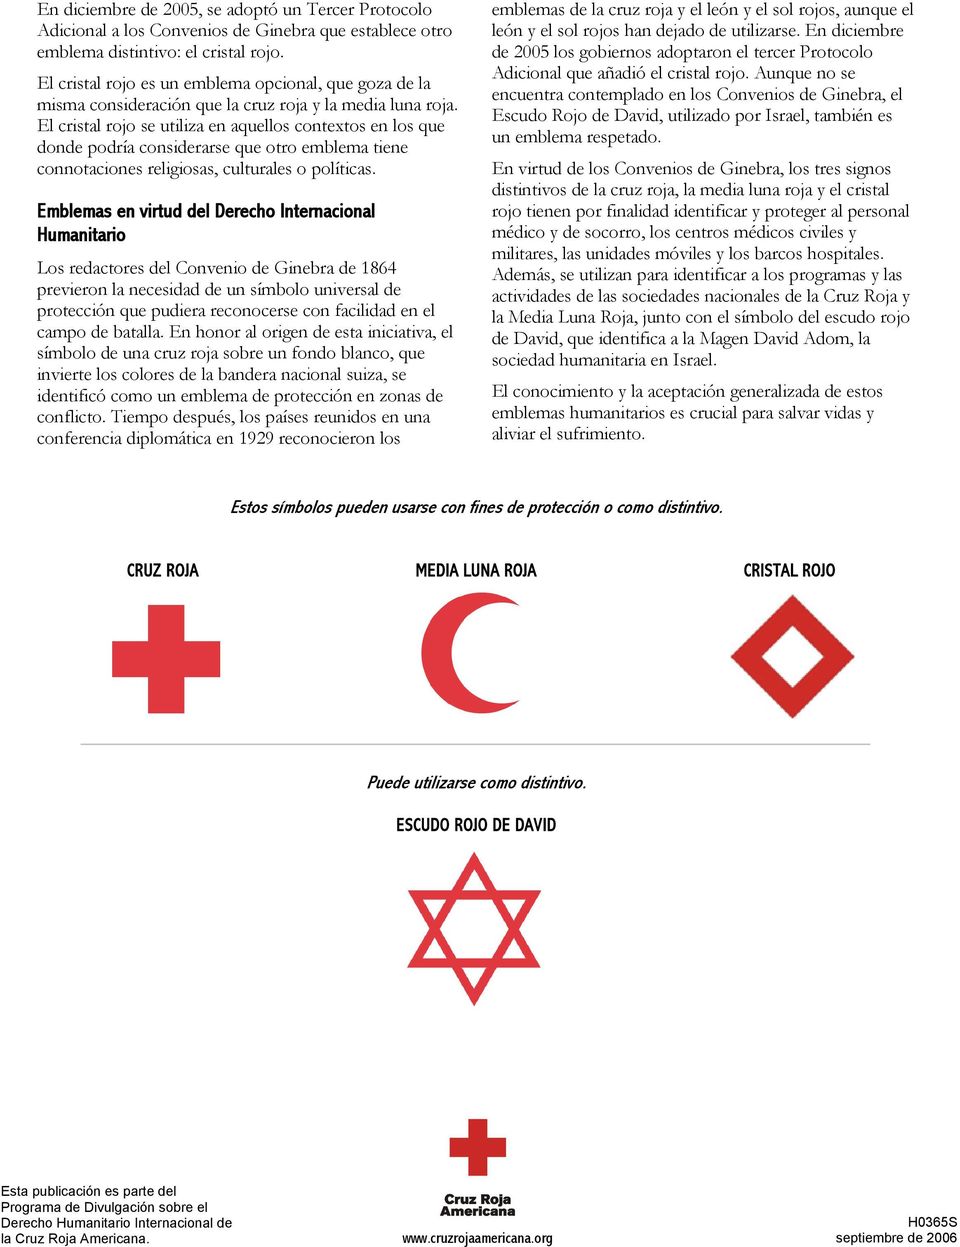 El cristal rojo se utiliza en aquellos contextos en los que donde podría considerarse que otro emblema tiene connotaciones religiosas, culturales o políticas.